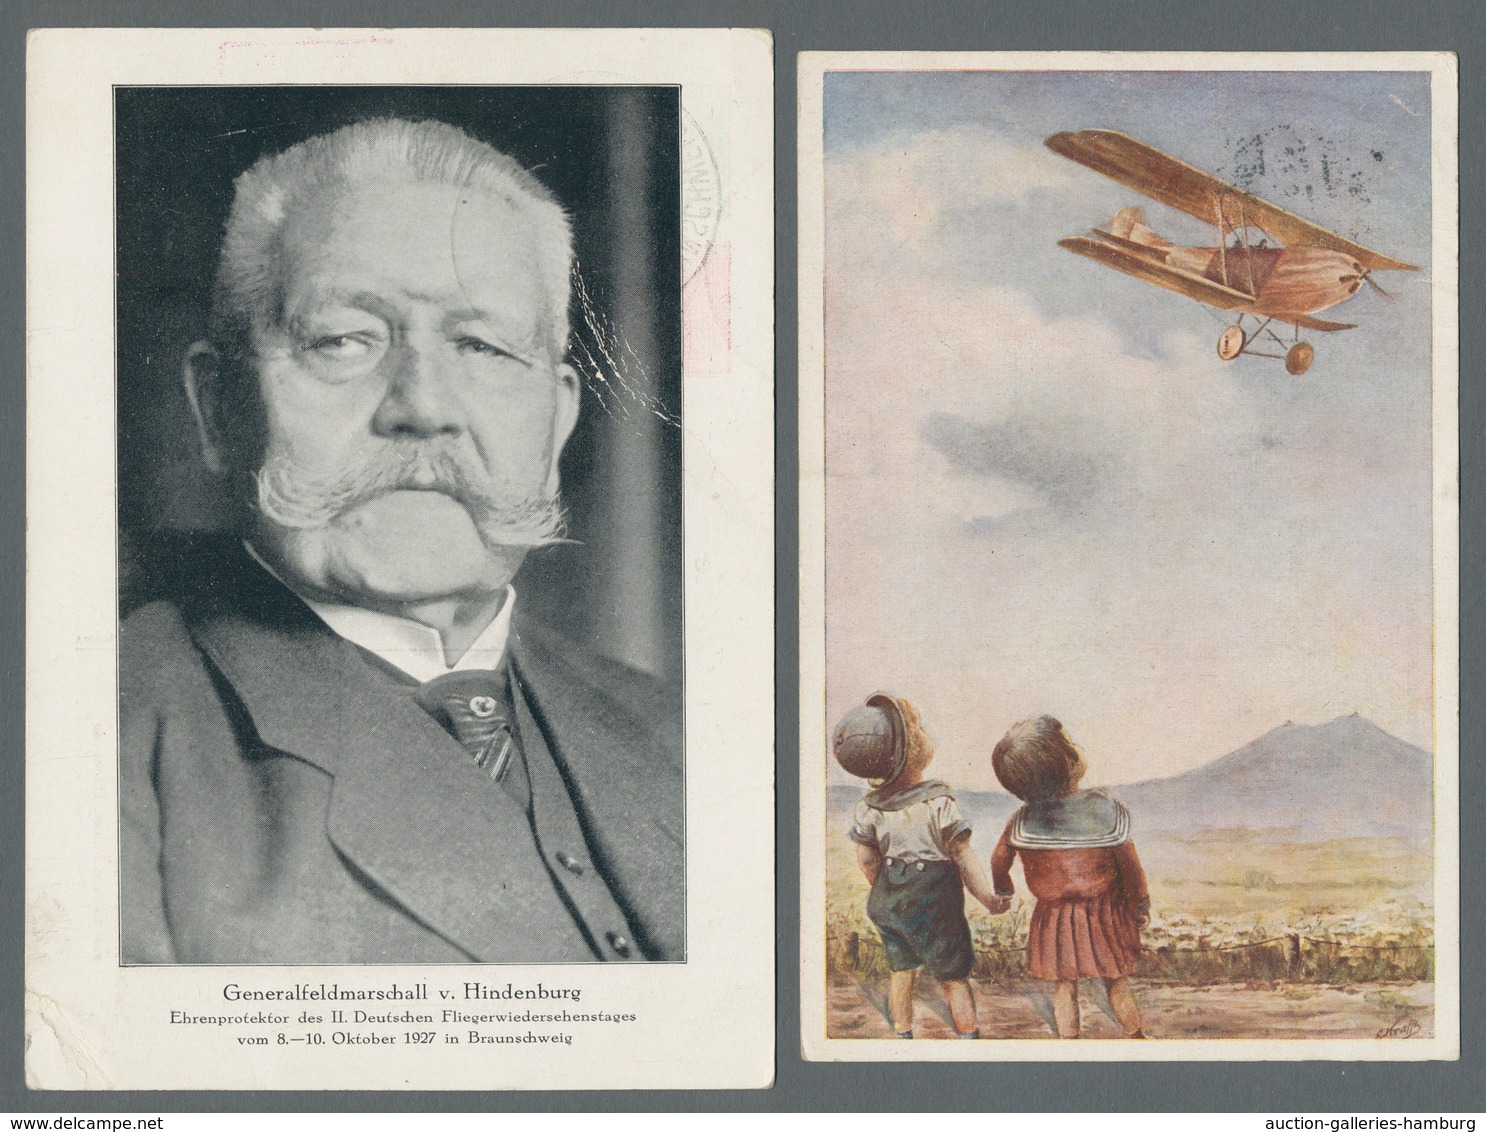 Flugpost Deutschland: 1912-1940, beachtenswerte Sammlung von 29 Flugpostbelegen in einem Album mit u